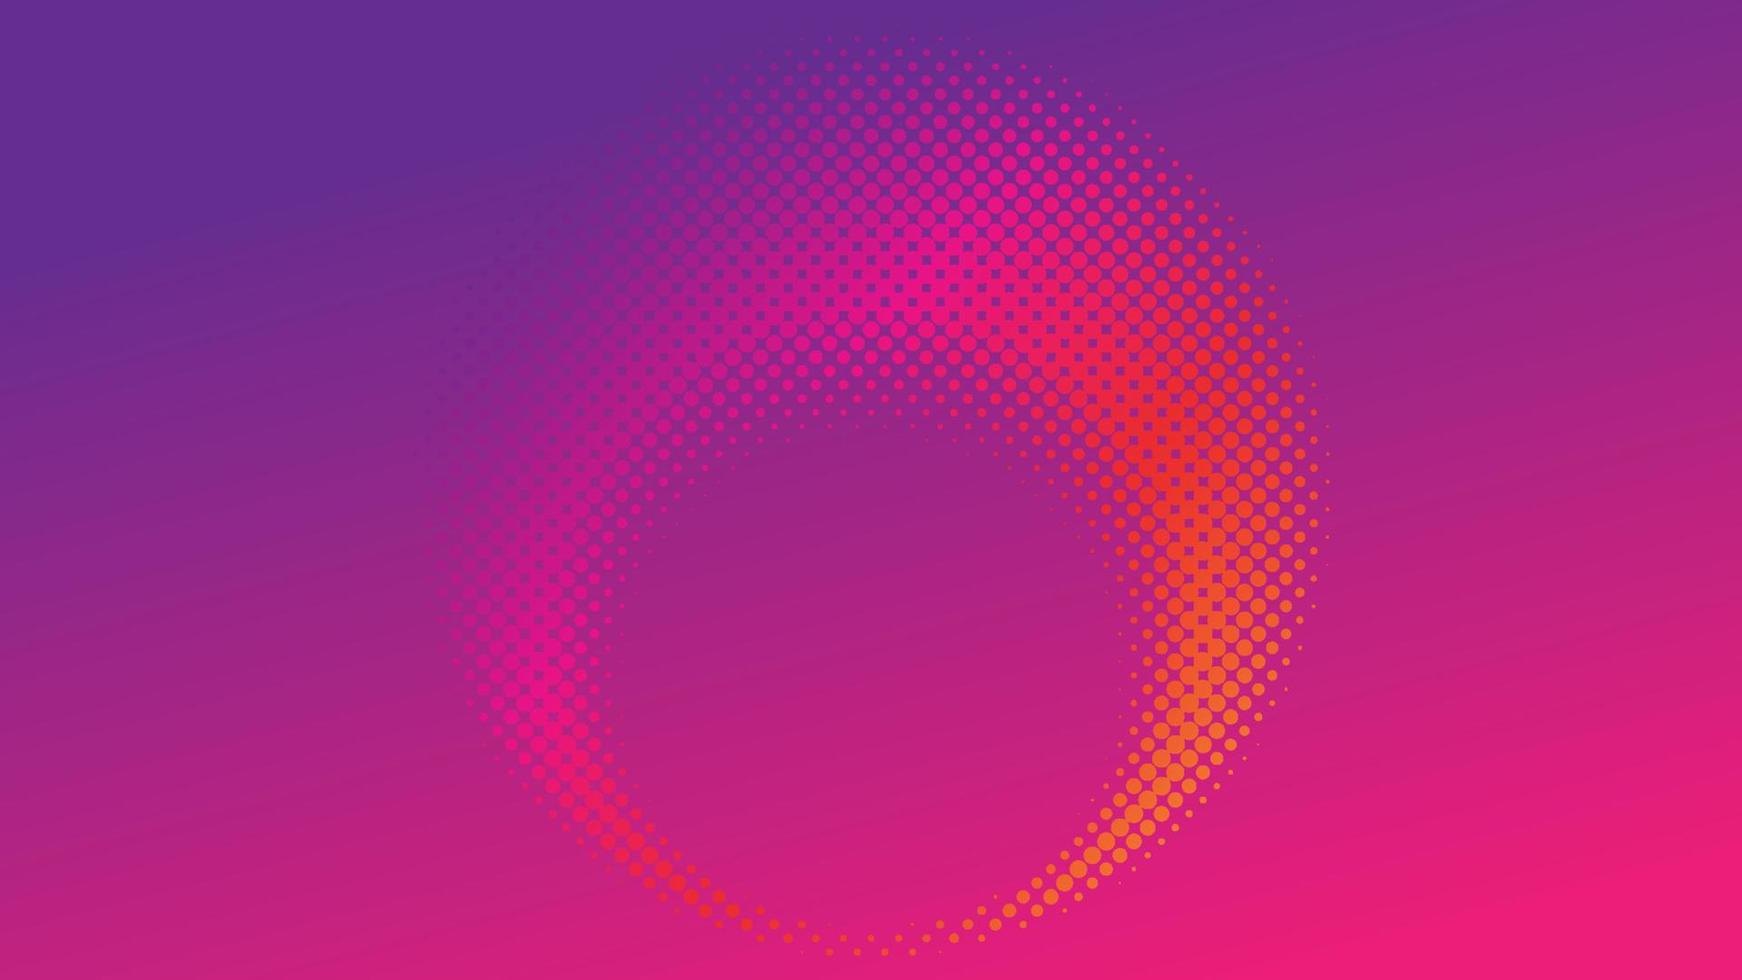 färgglad radiell halvtonsbakgrundsdesignmall, popkonst, abstrakt prickmönsterillustration, modernt texturelement, ringhalvtonsprydnad, orange magenta violett lila gradienttapet vektor